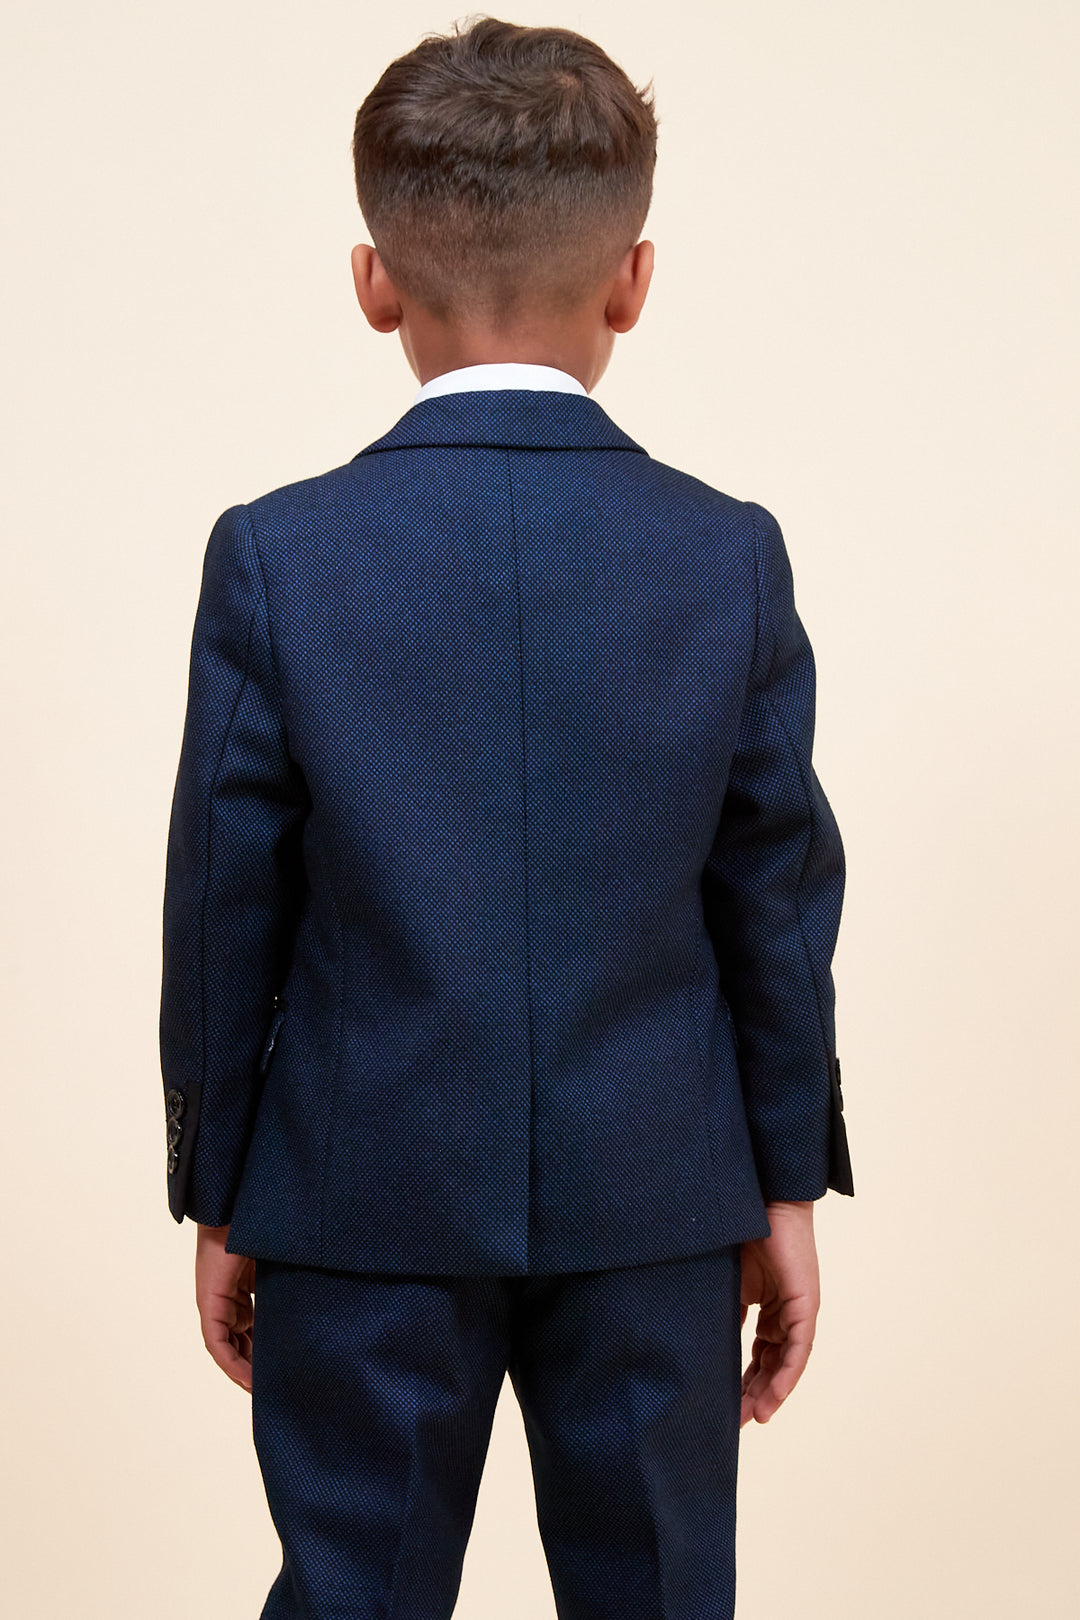 CALLUM - Childrens Blue Three Piece Suit